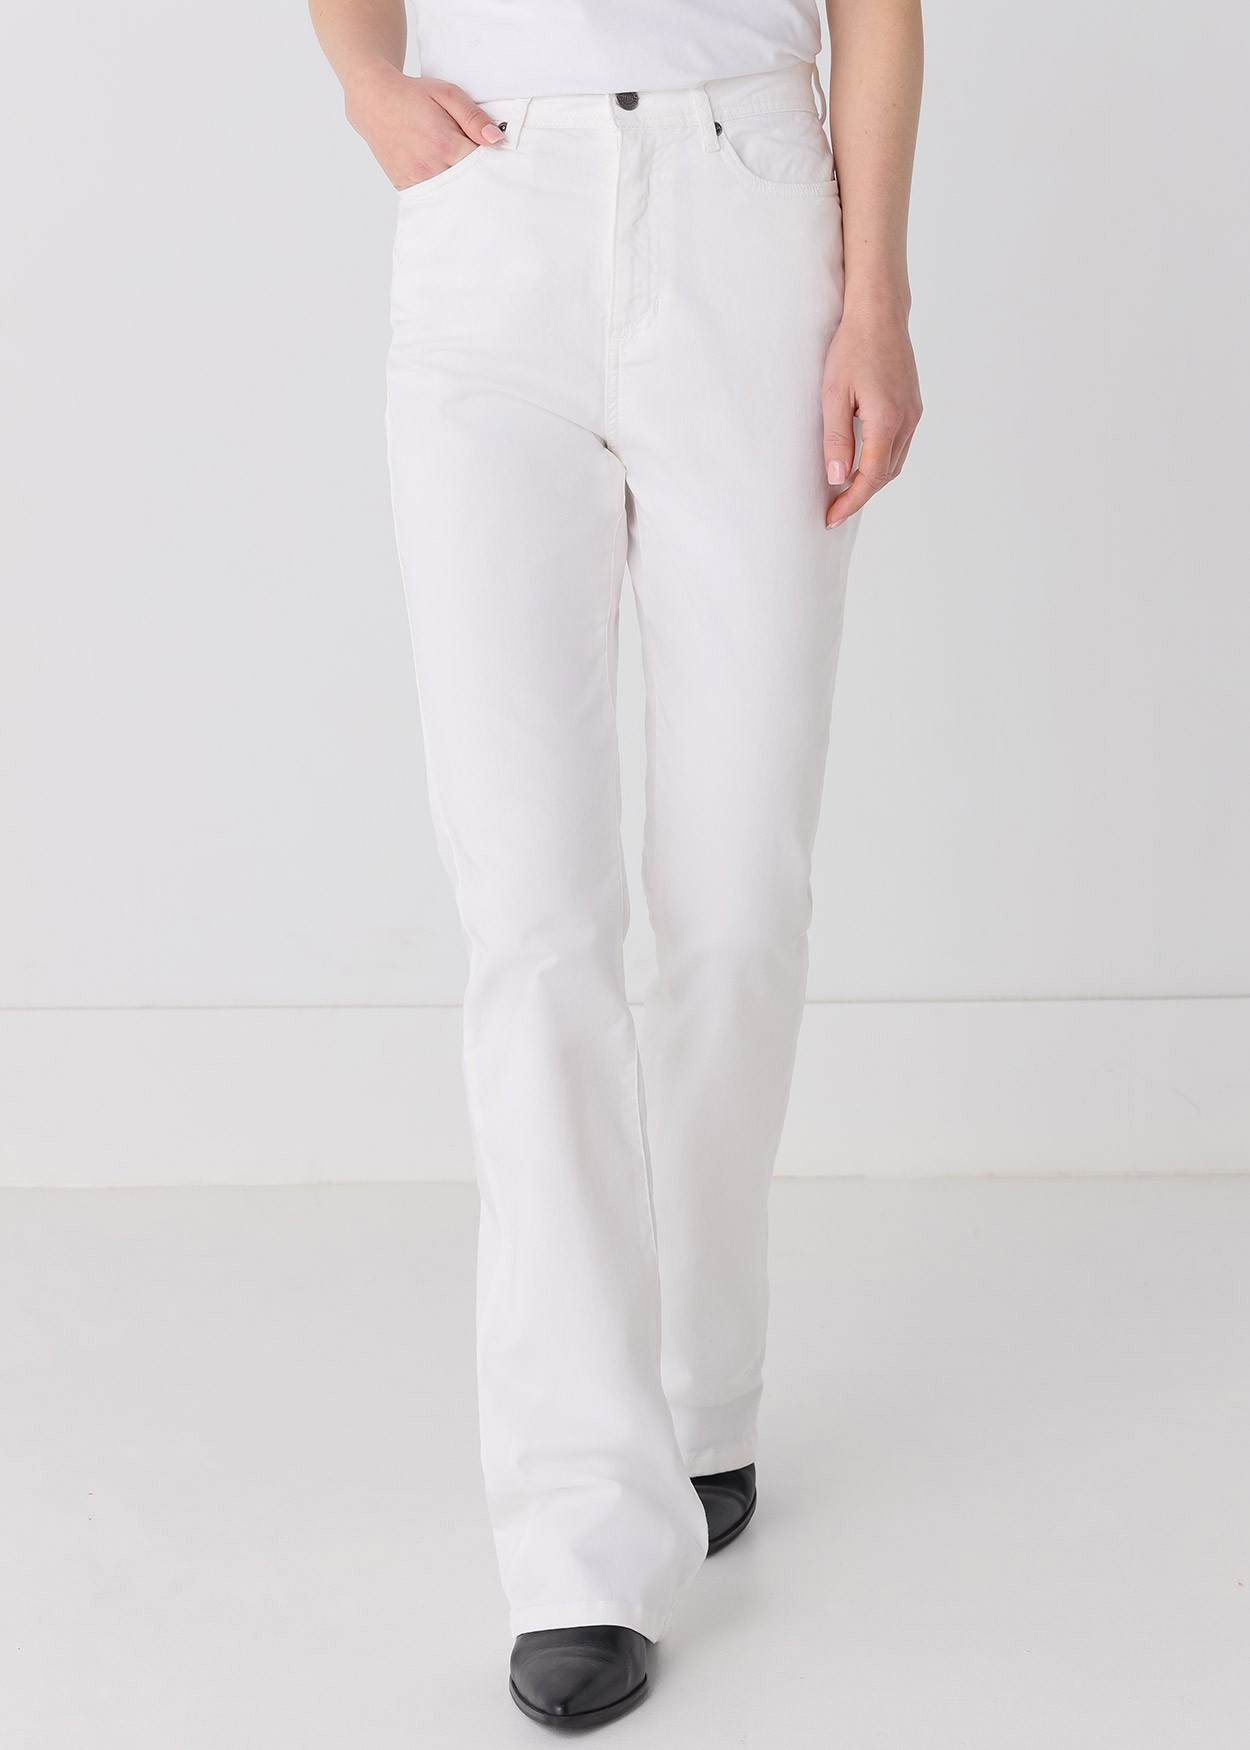 Pantalon de couleur Gracia-Pigm | Taille haute - Boot Cut | Taille en pouces Cimarron